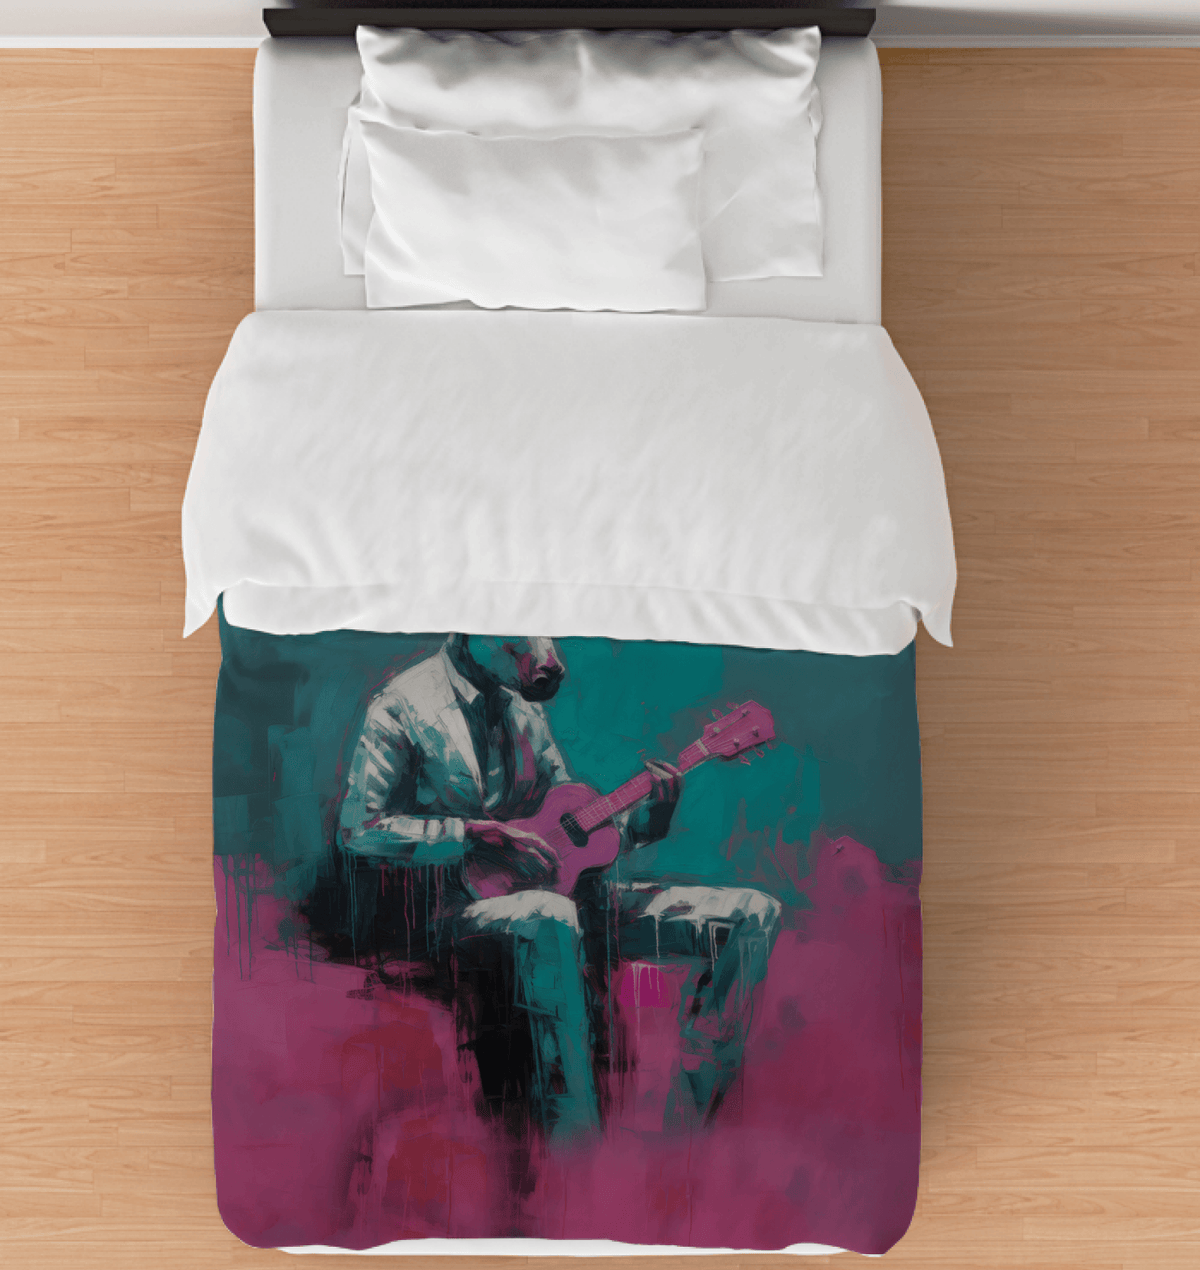 Rocking Riffs Comforter - Twin - Beyond T-shirts